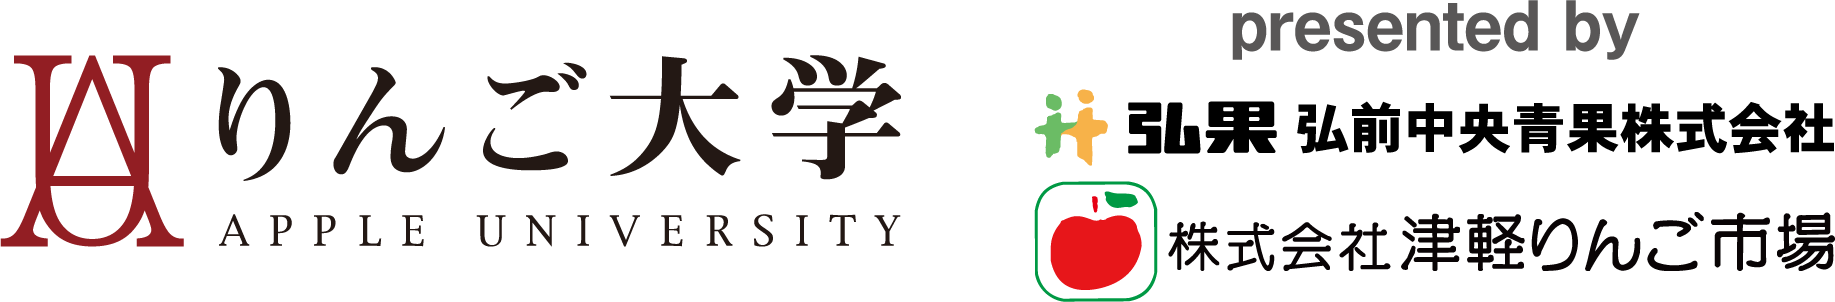 りんご大学ロゴ画像